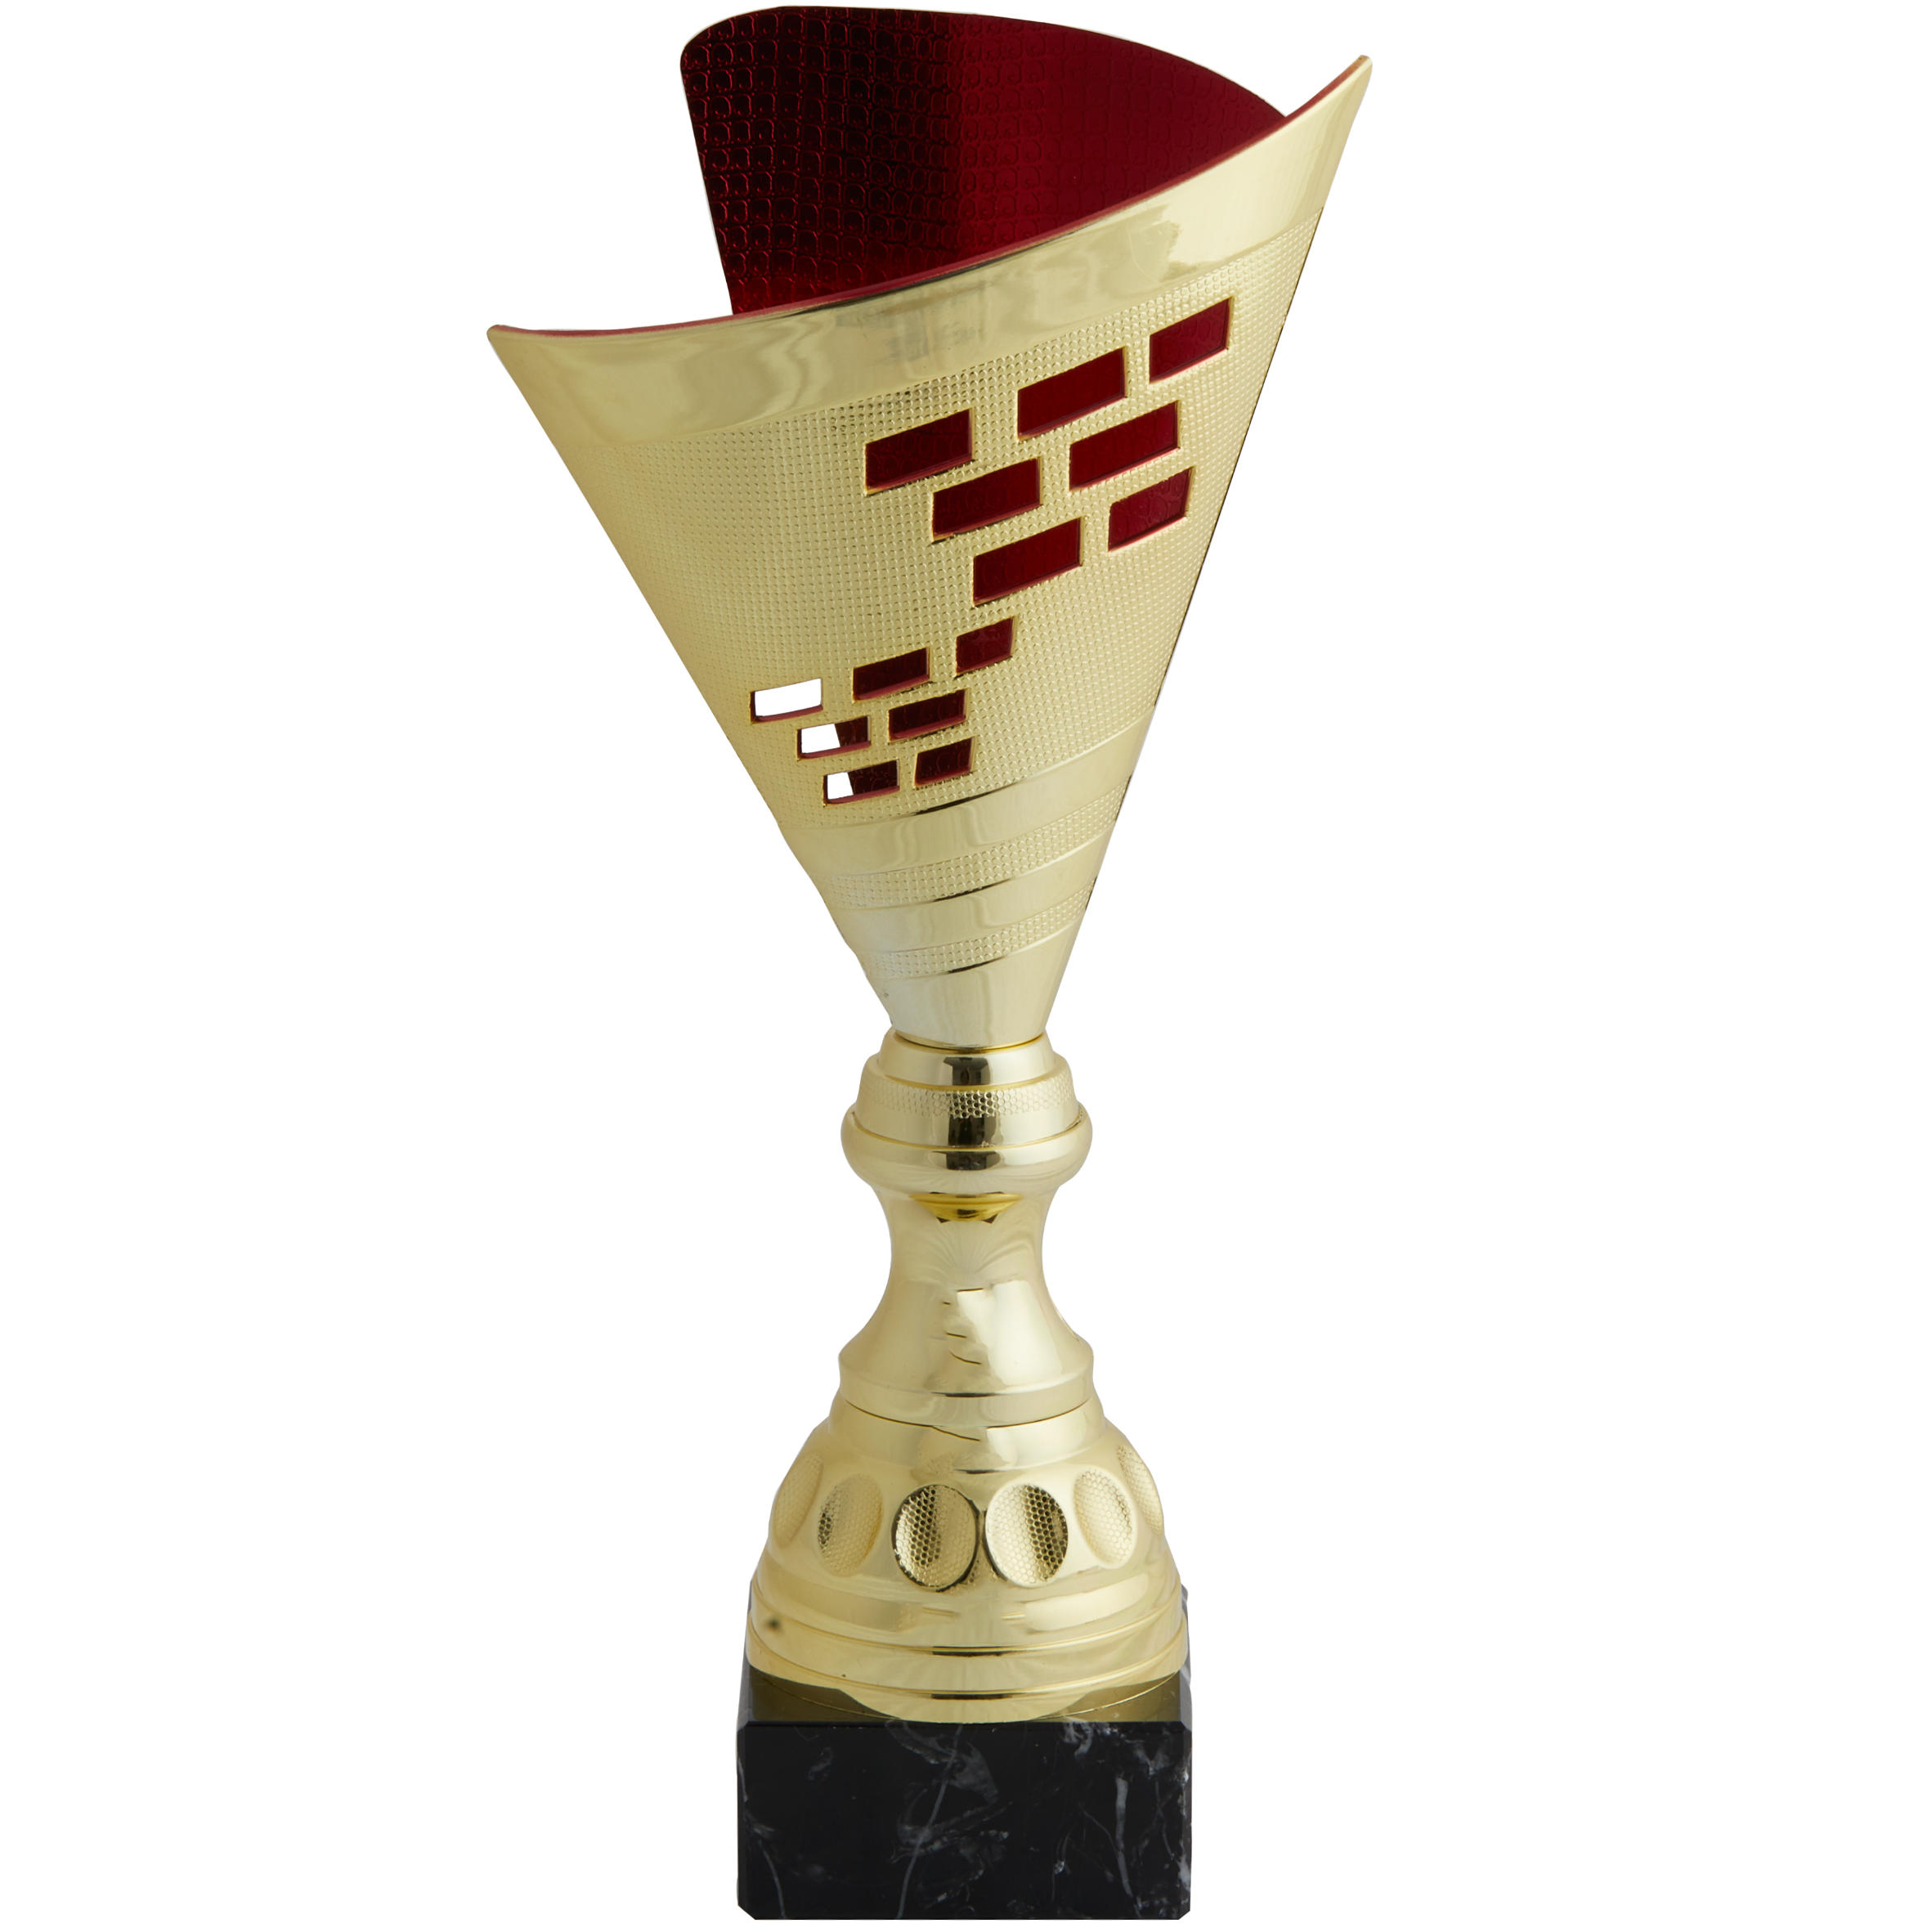 WORKSHOP T537 Trophy 35 cm - Gold/Red